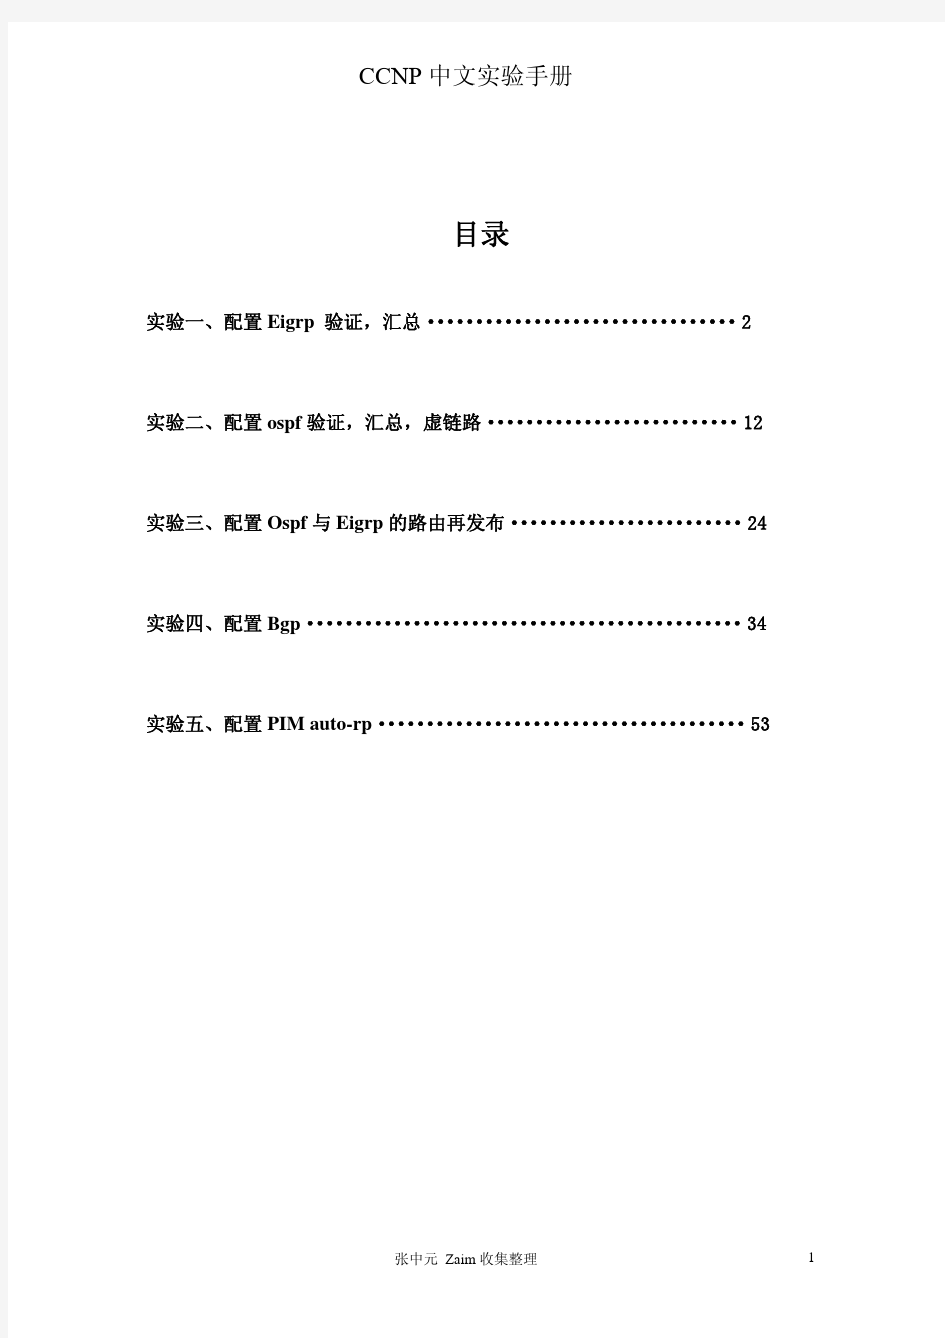 CCNP中文实验手册